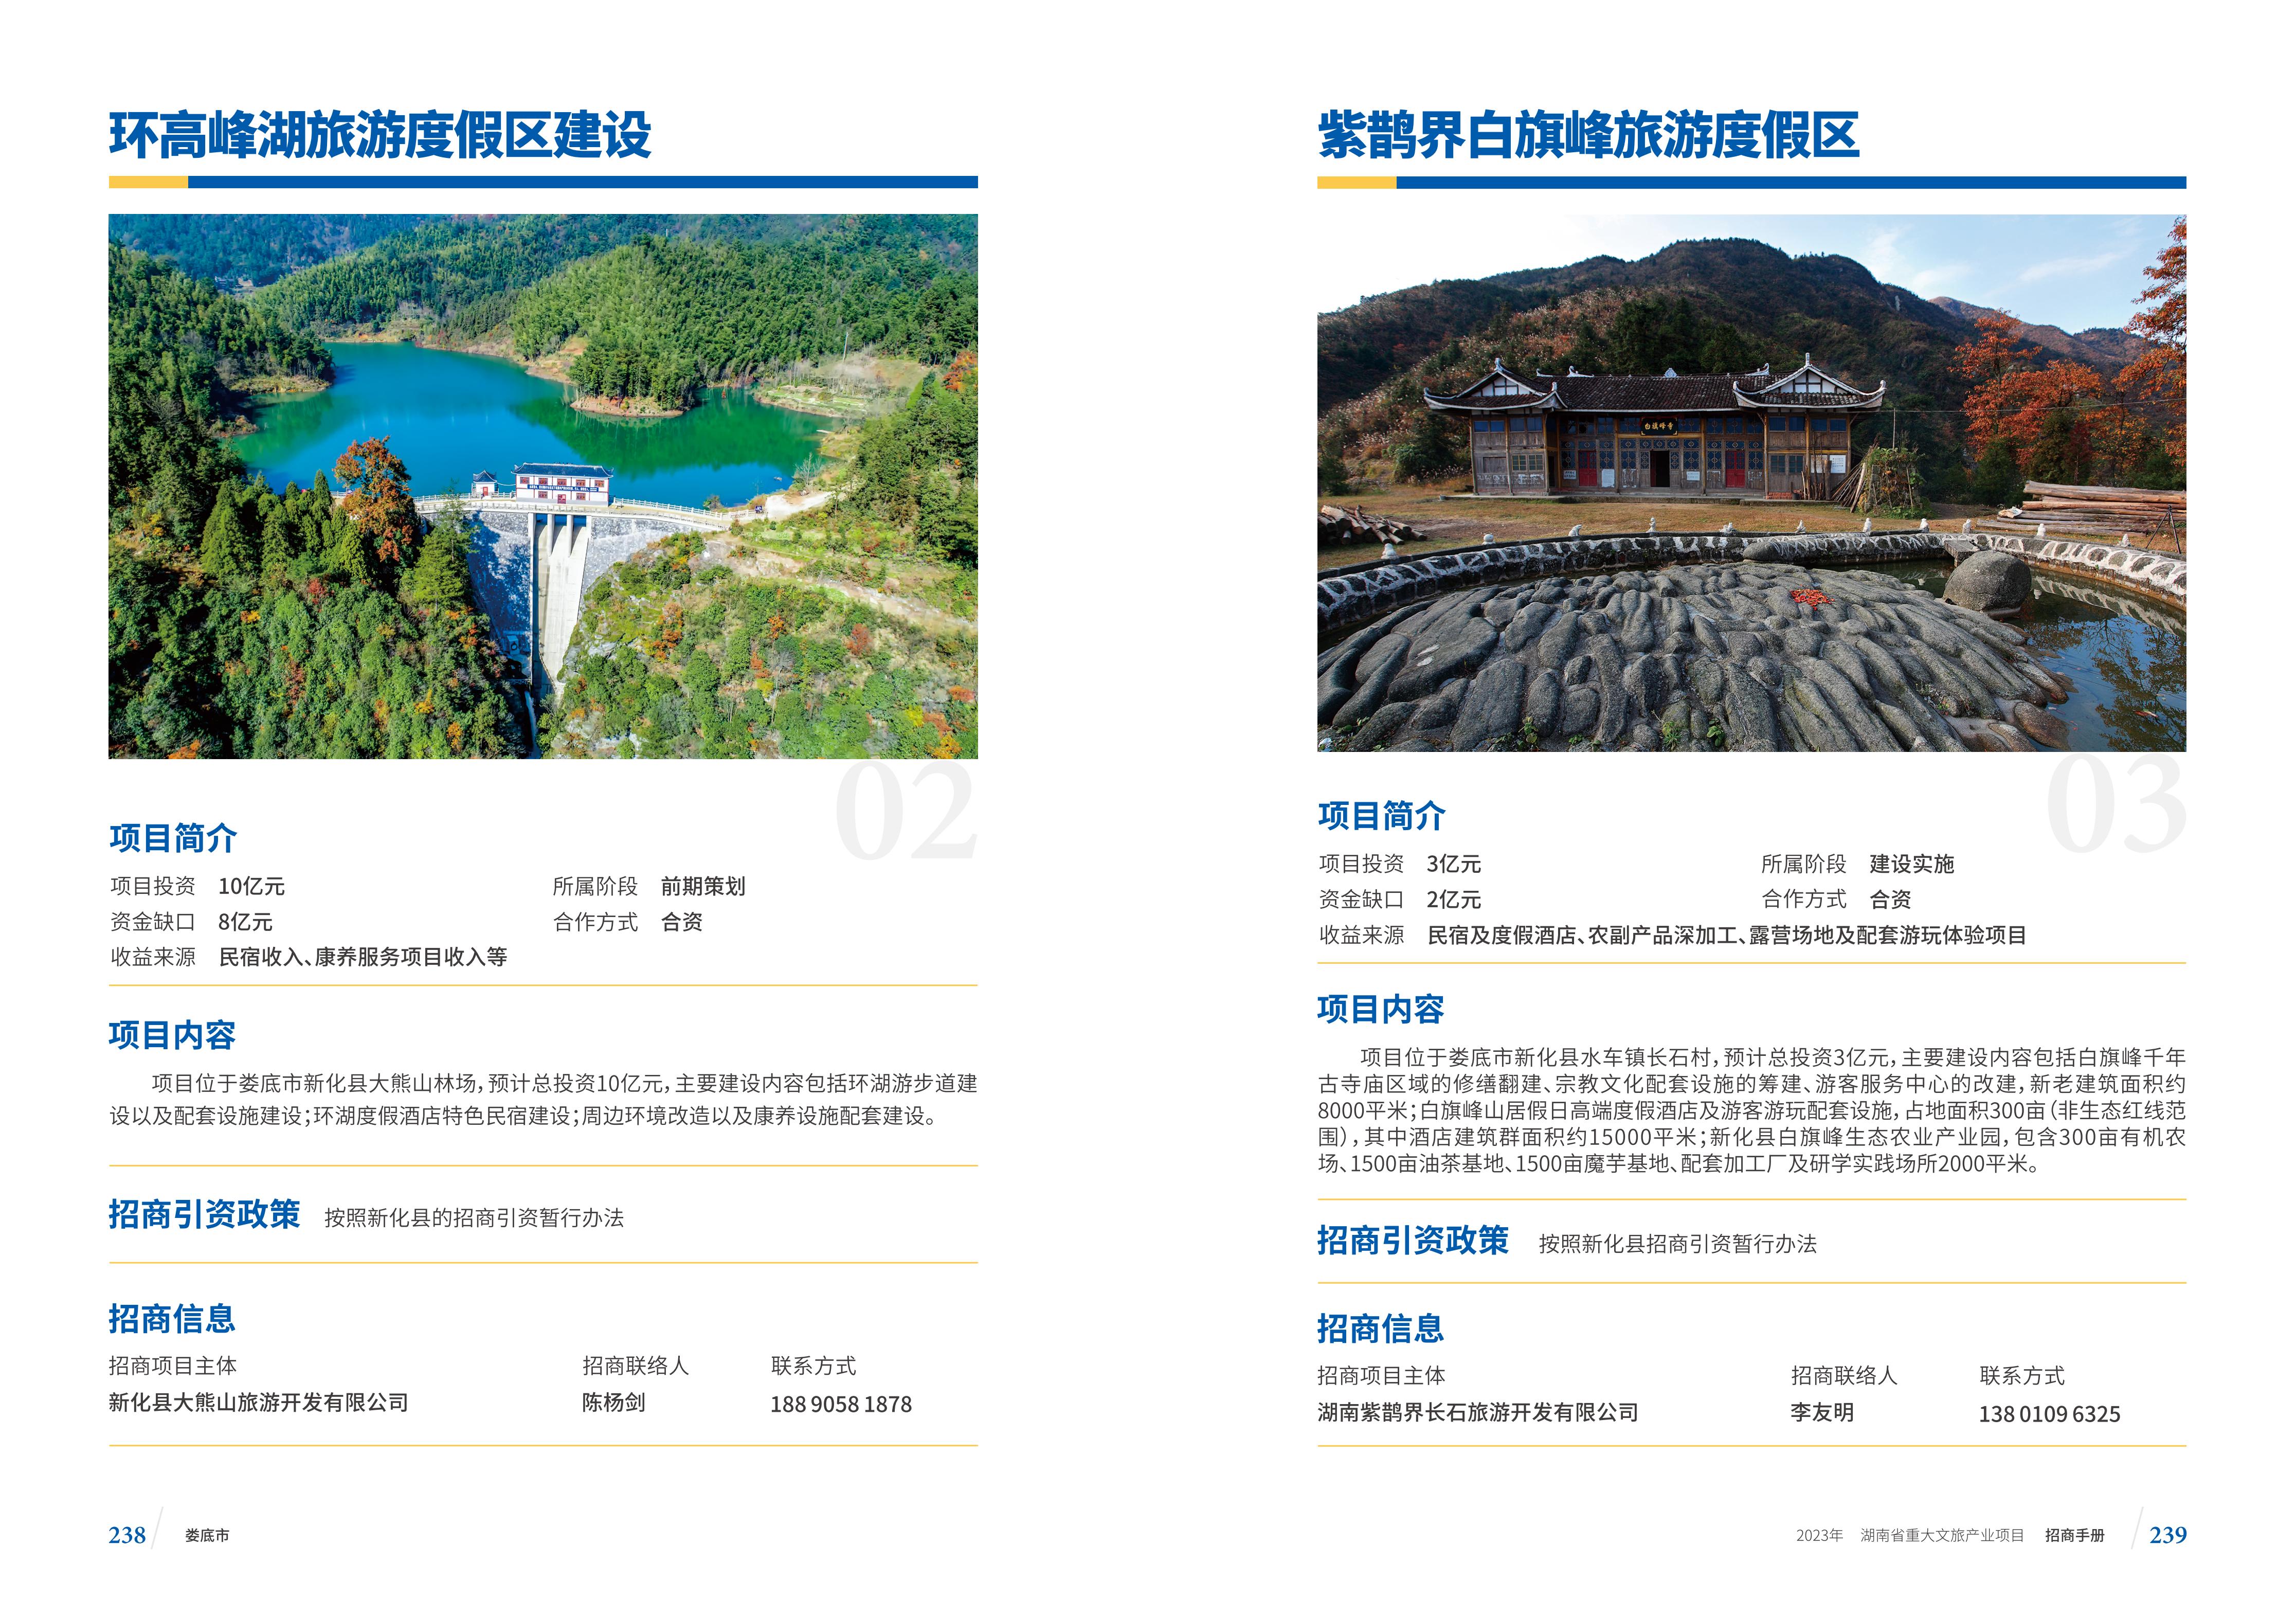 湖南省重大文旅产业项目招手册线上链接版_127.jpg